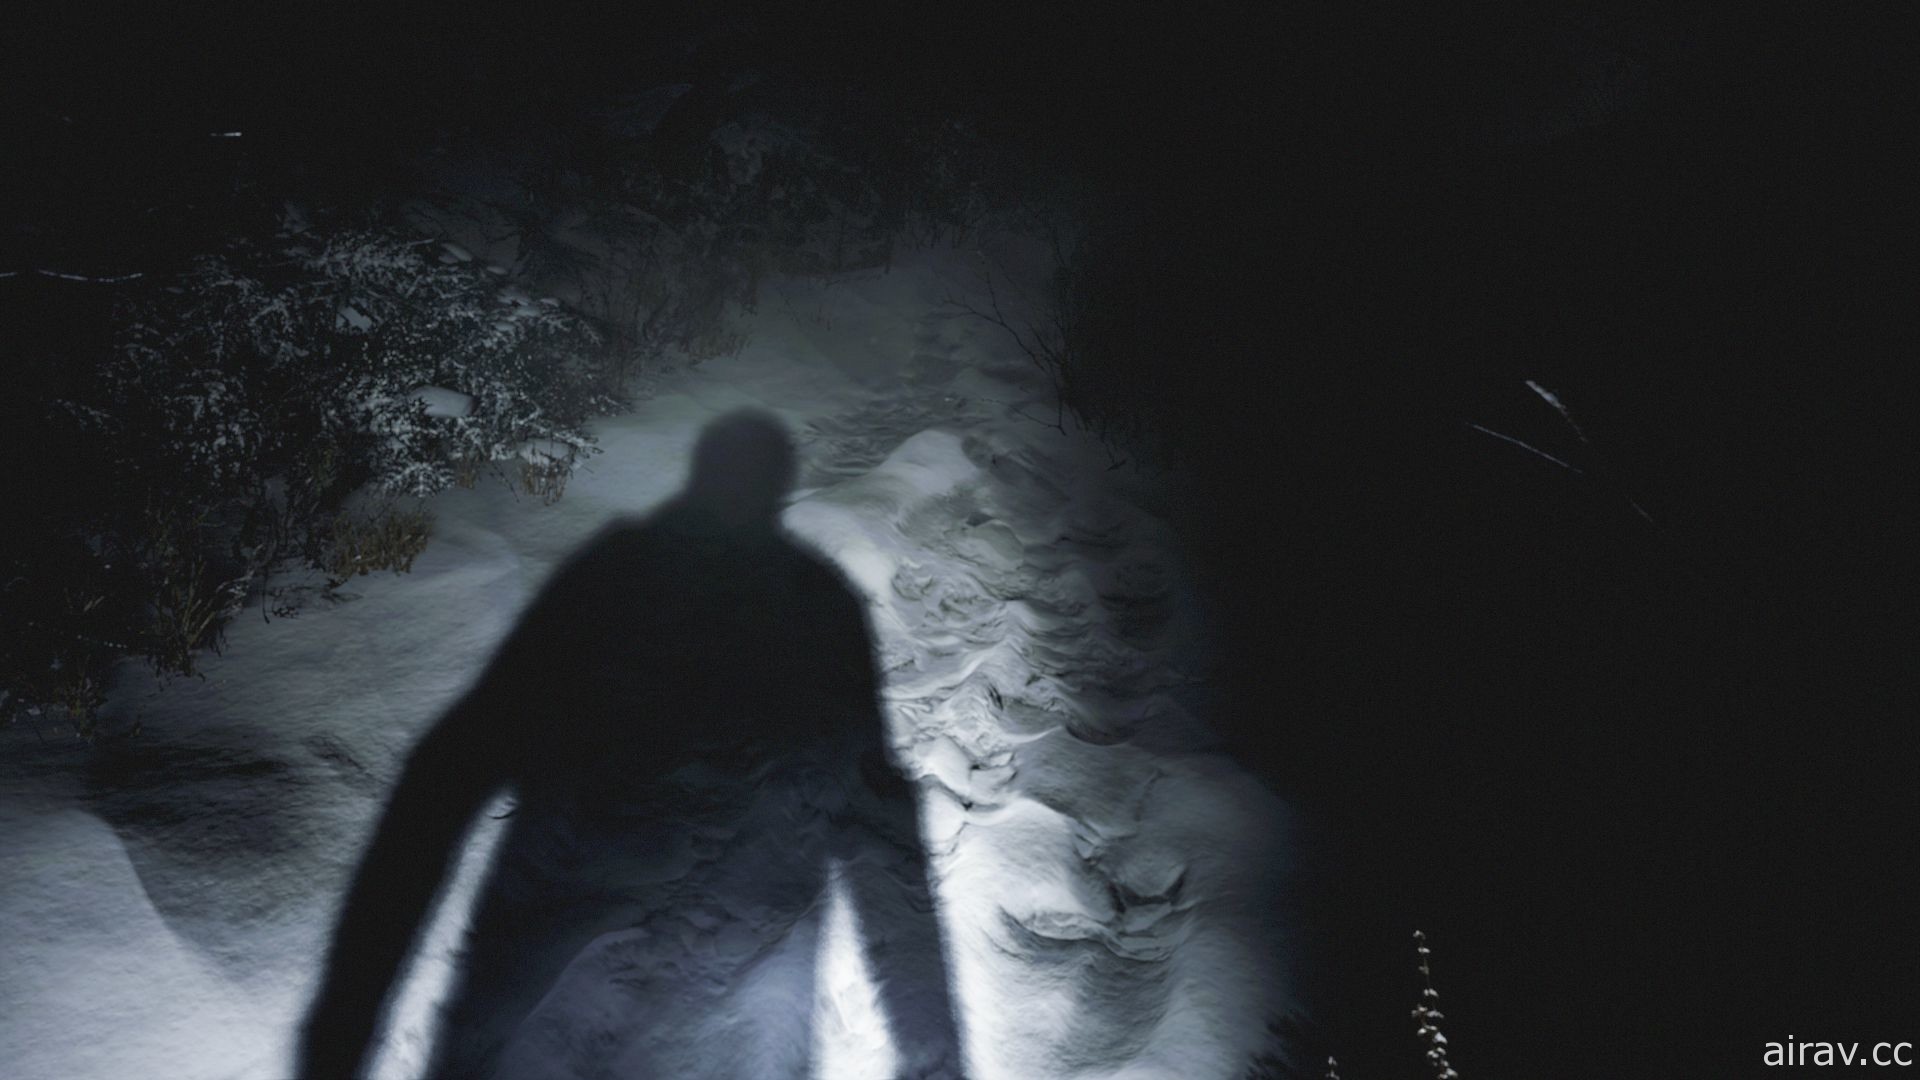 《恶灵古堡》直播节目 1 月 22 日登场 将带来《恶灵古堡 8》等系列最新资讯